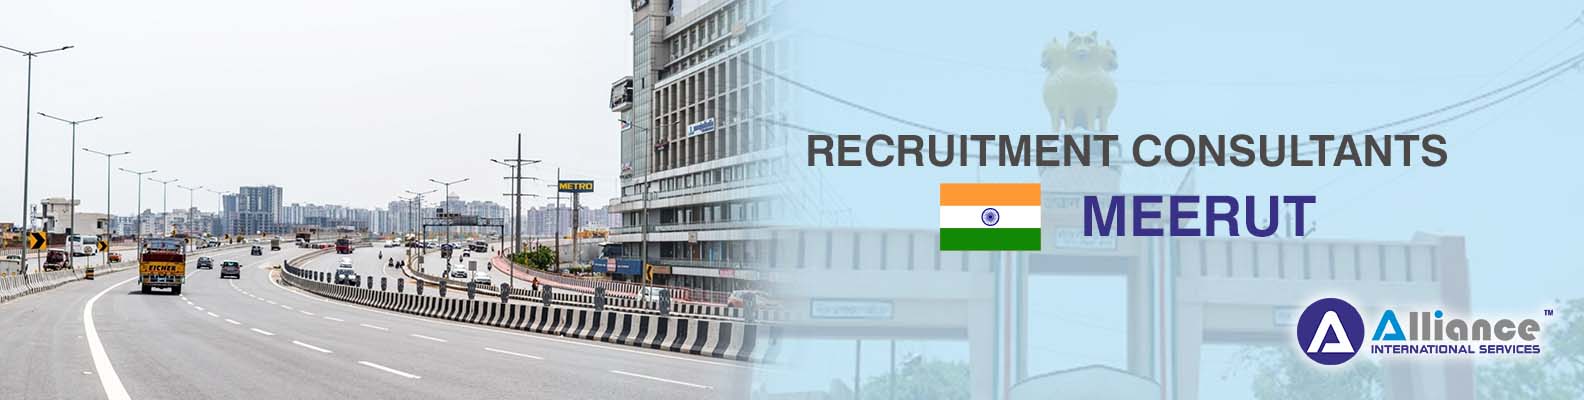 Recruitment Consultants Meerut